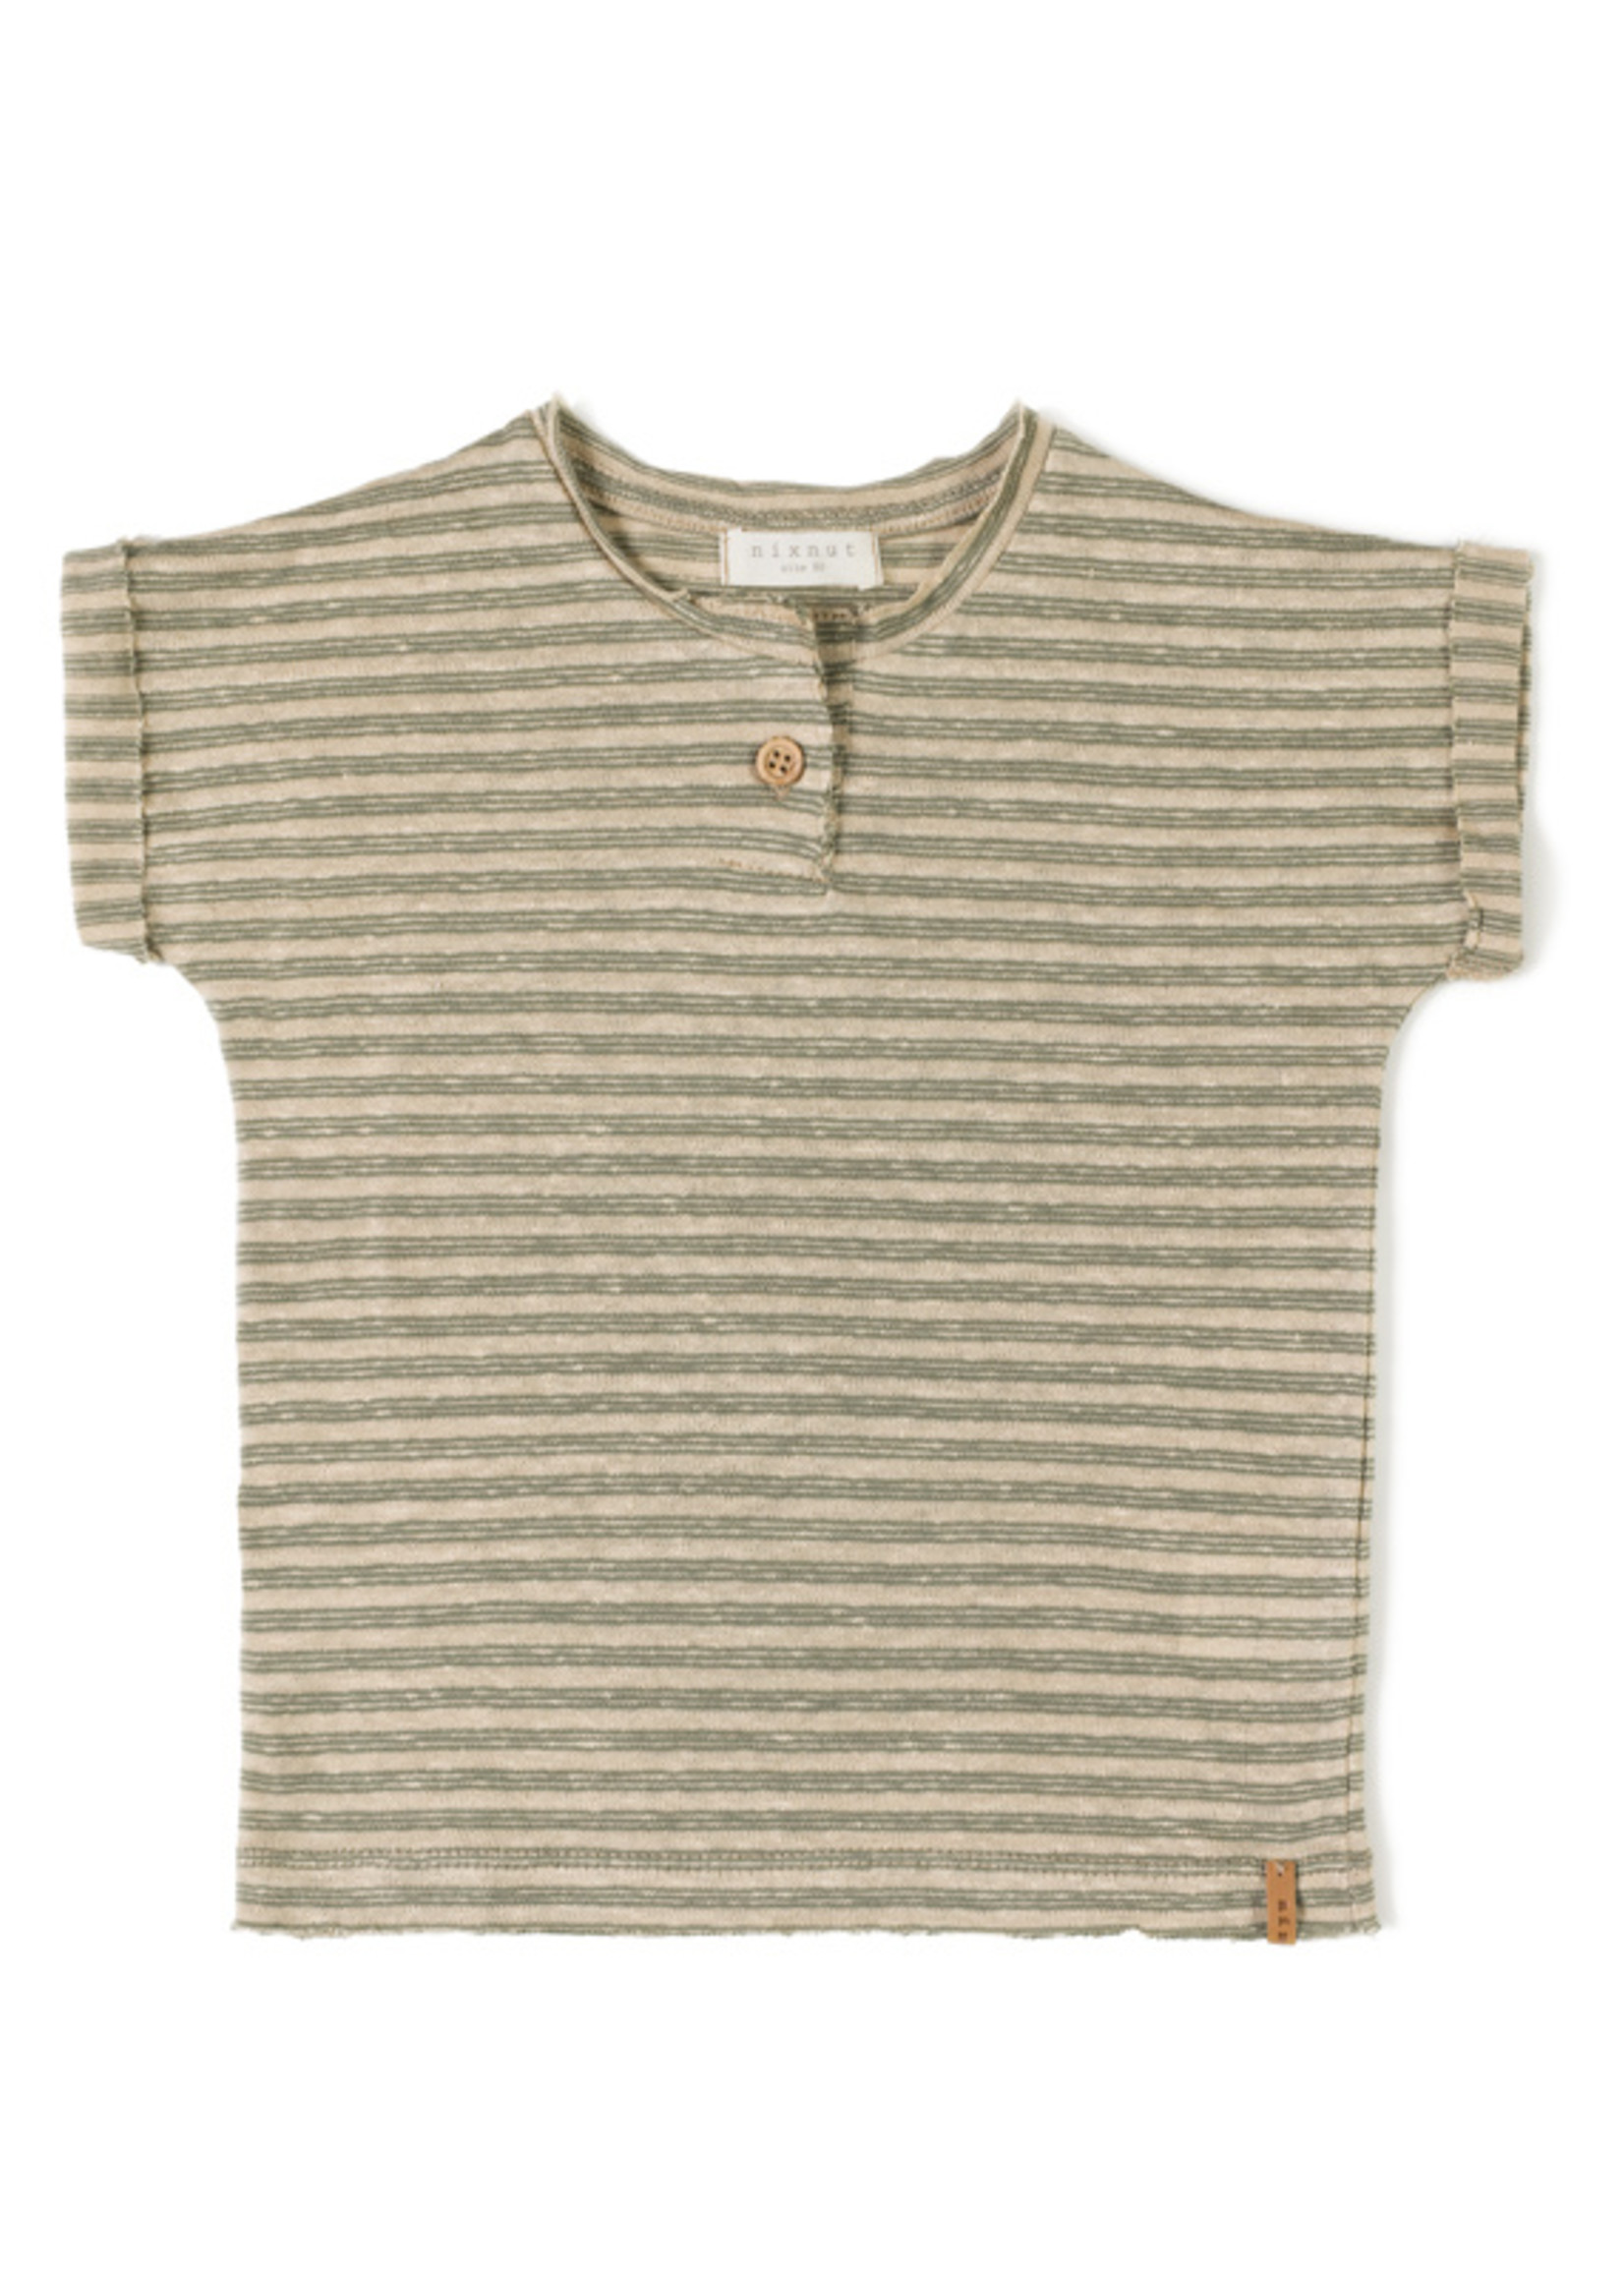 Nixnut Be tshirt - Moss stripe